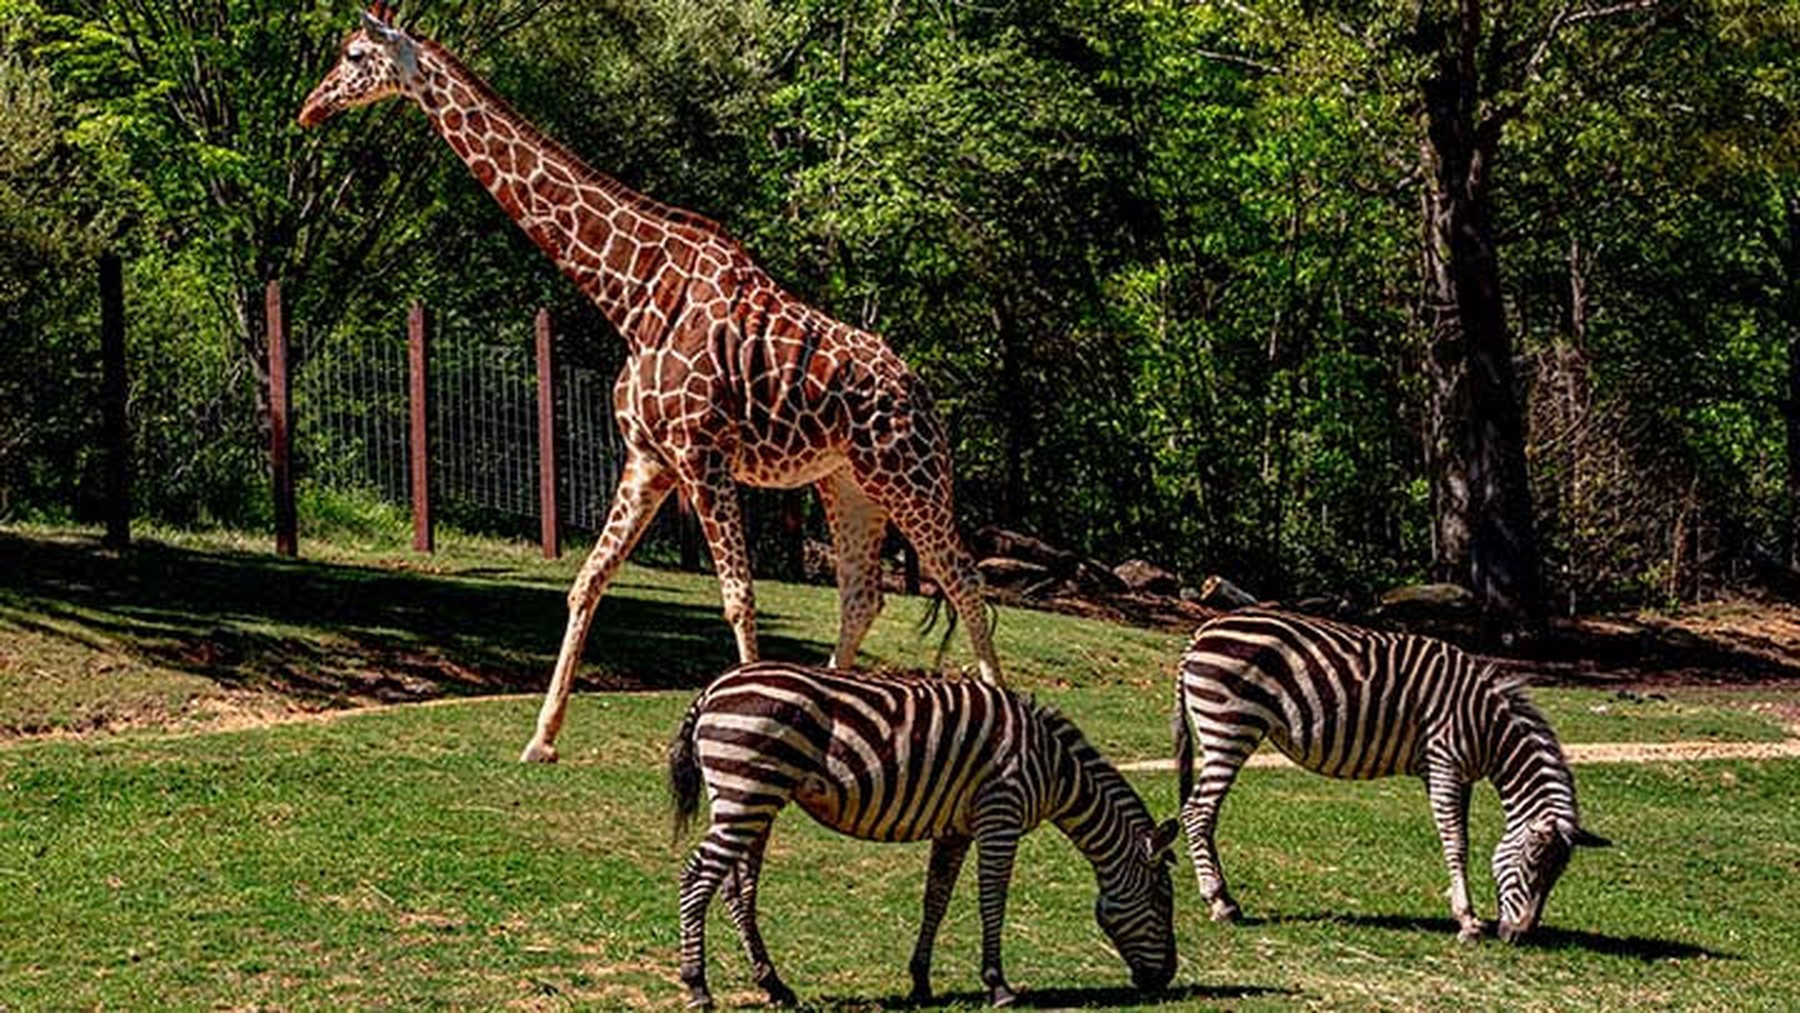 Twee zebra's eten gras op de voorgrond. Op de achtergrond loopt een giraffe voorbij.